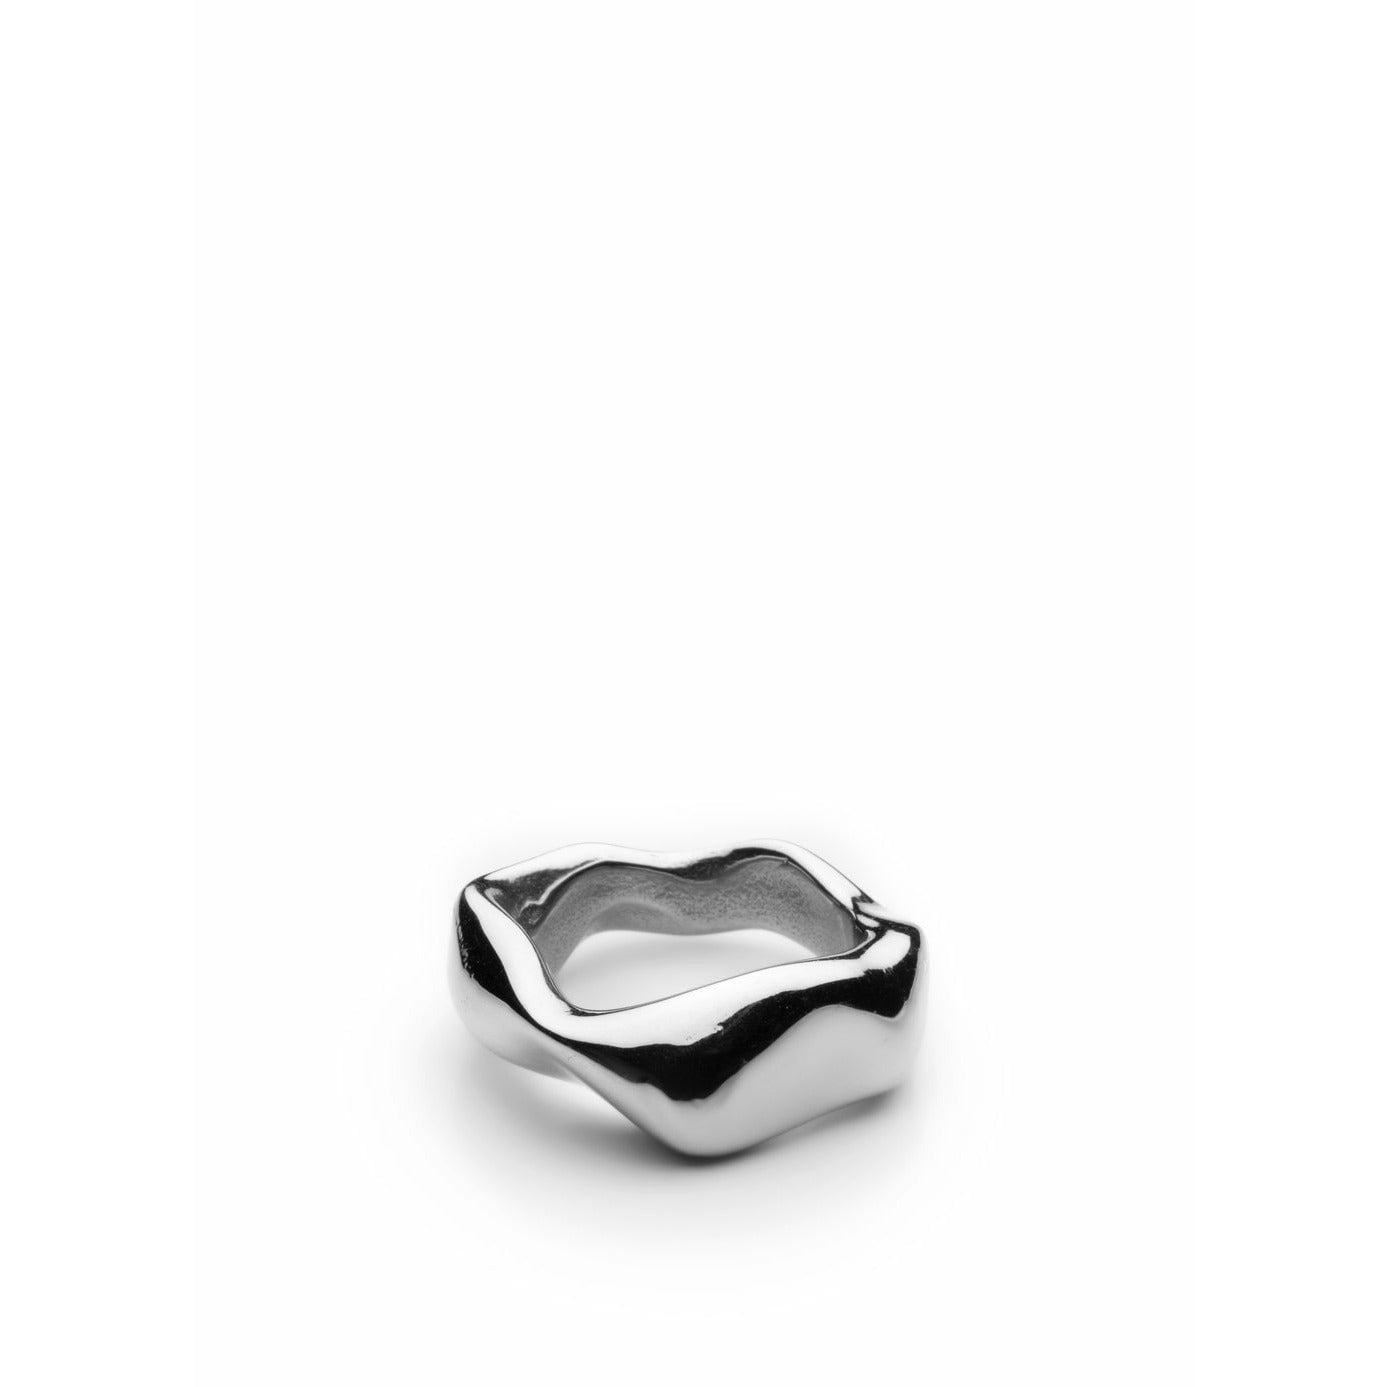 Acciaio medio di skultuna anello robusto, Ø1,81 cm